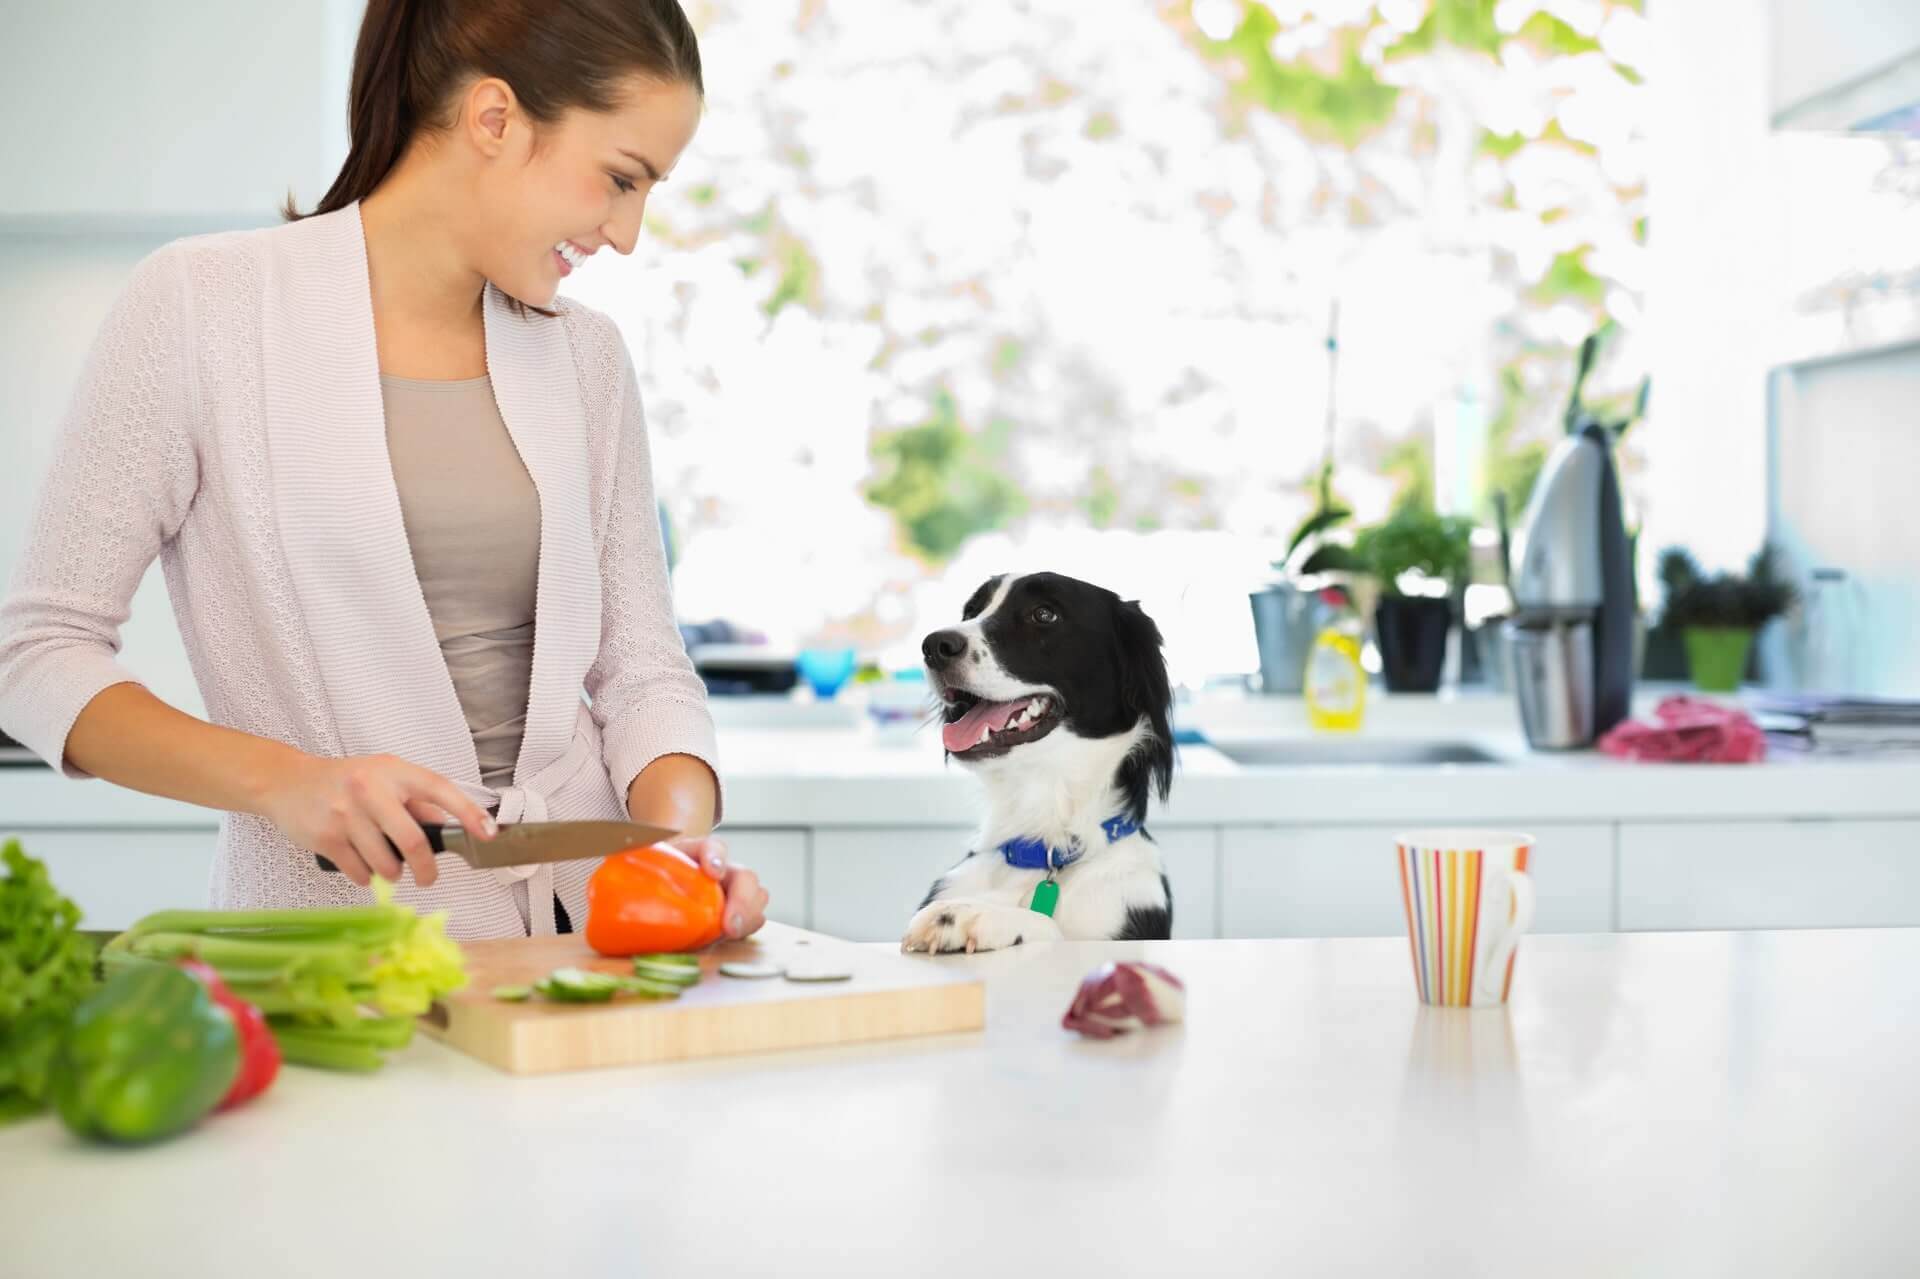 Frau schneidet in der Küche Gemüse, Hund sieht zu ihr rauf